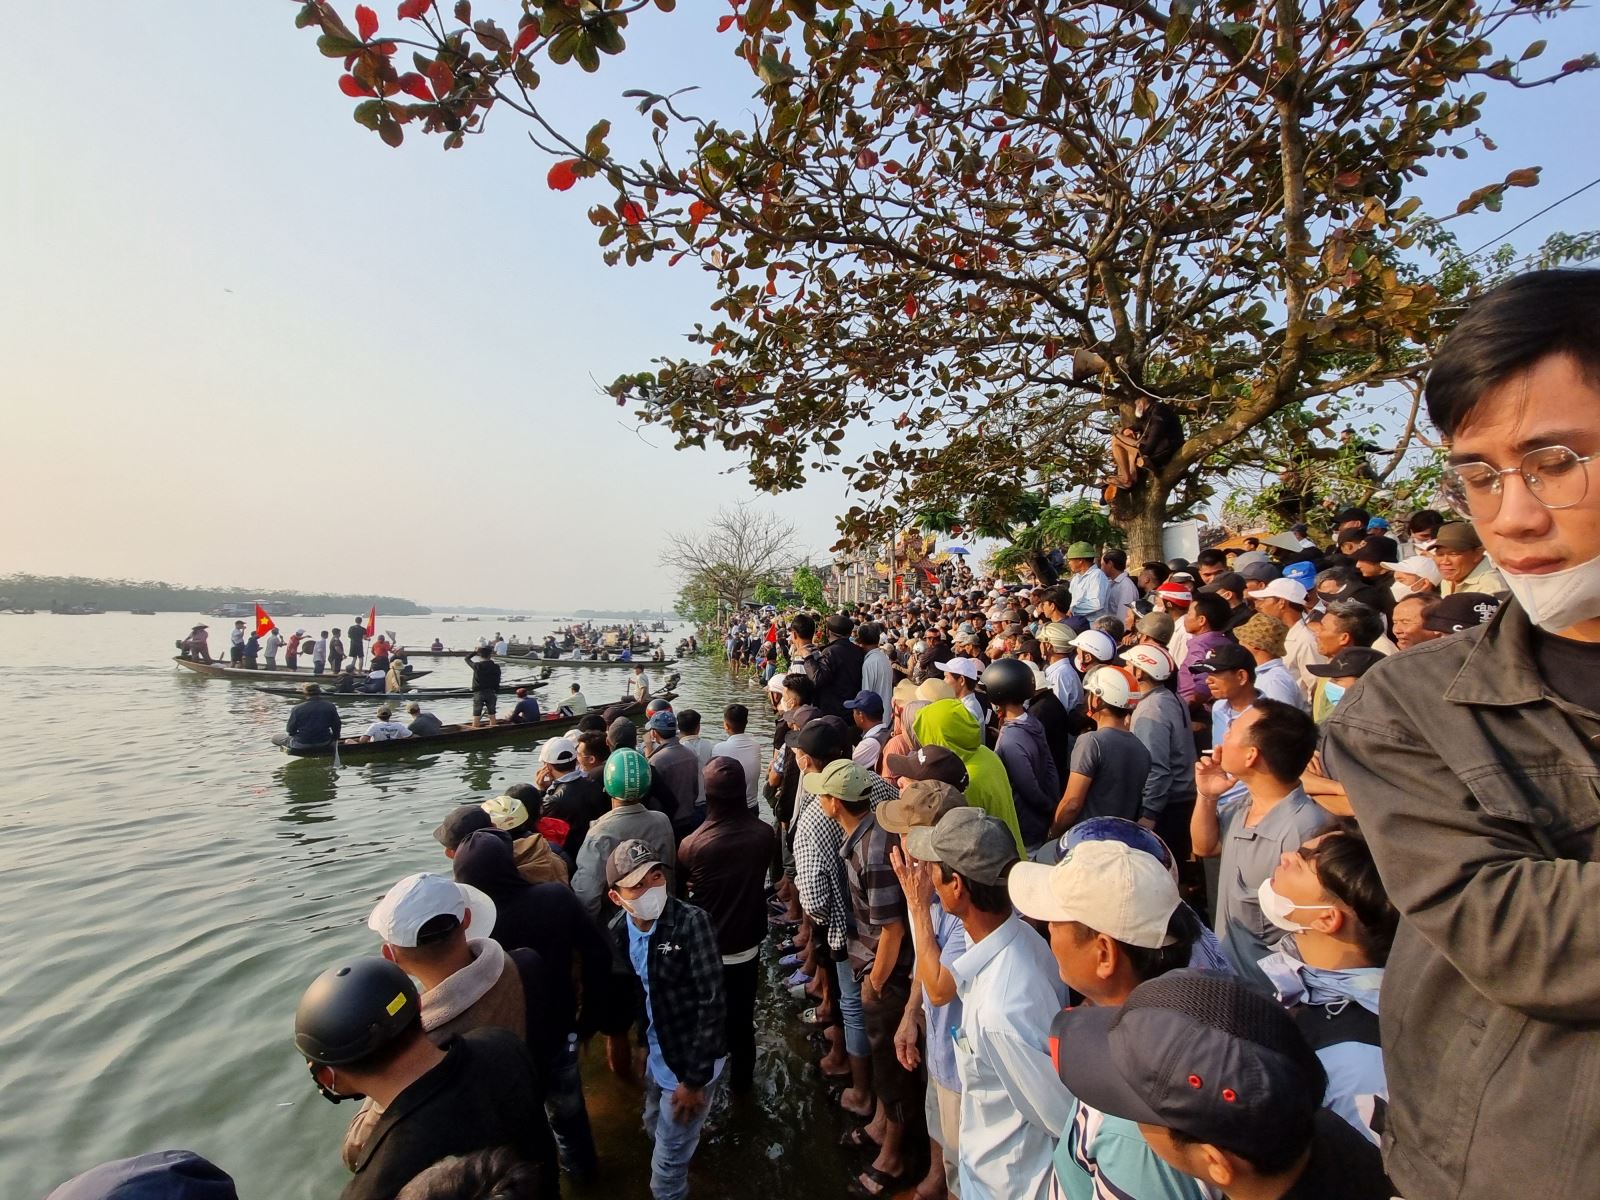 Hàng nghìn người dân cùng du khách khắp nơi đã đổ về cùng reo hò náo nhiệt ở hai bên bờ sông Hương để cổ vũ cho các đội đua.